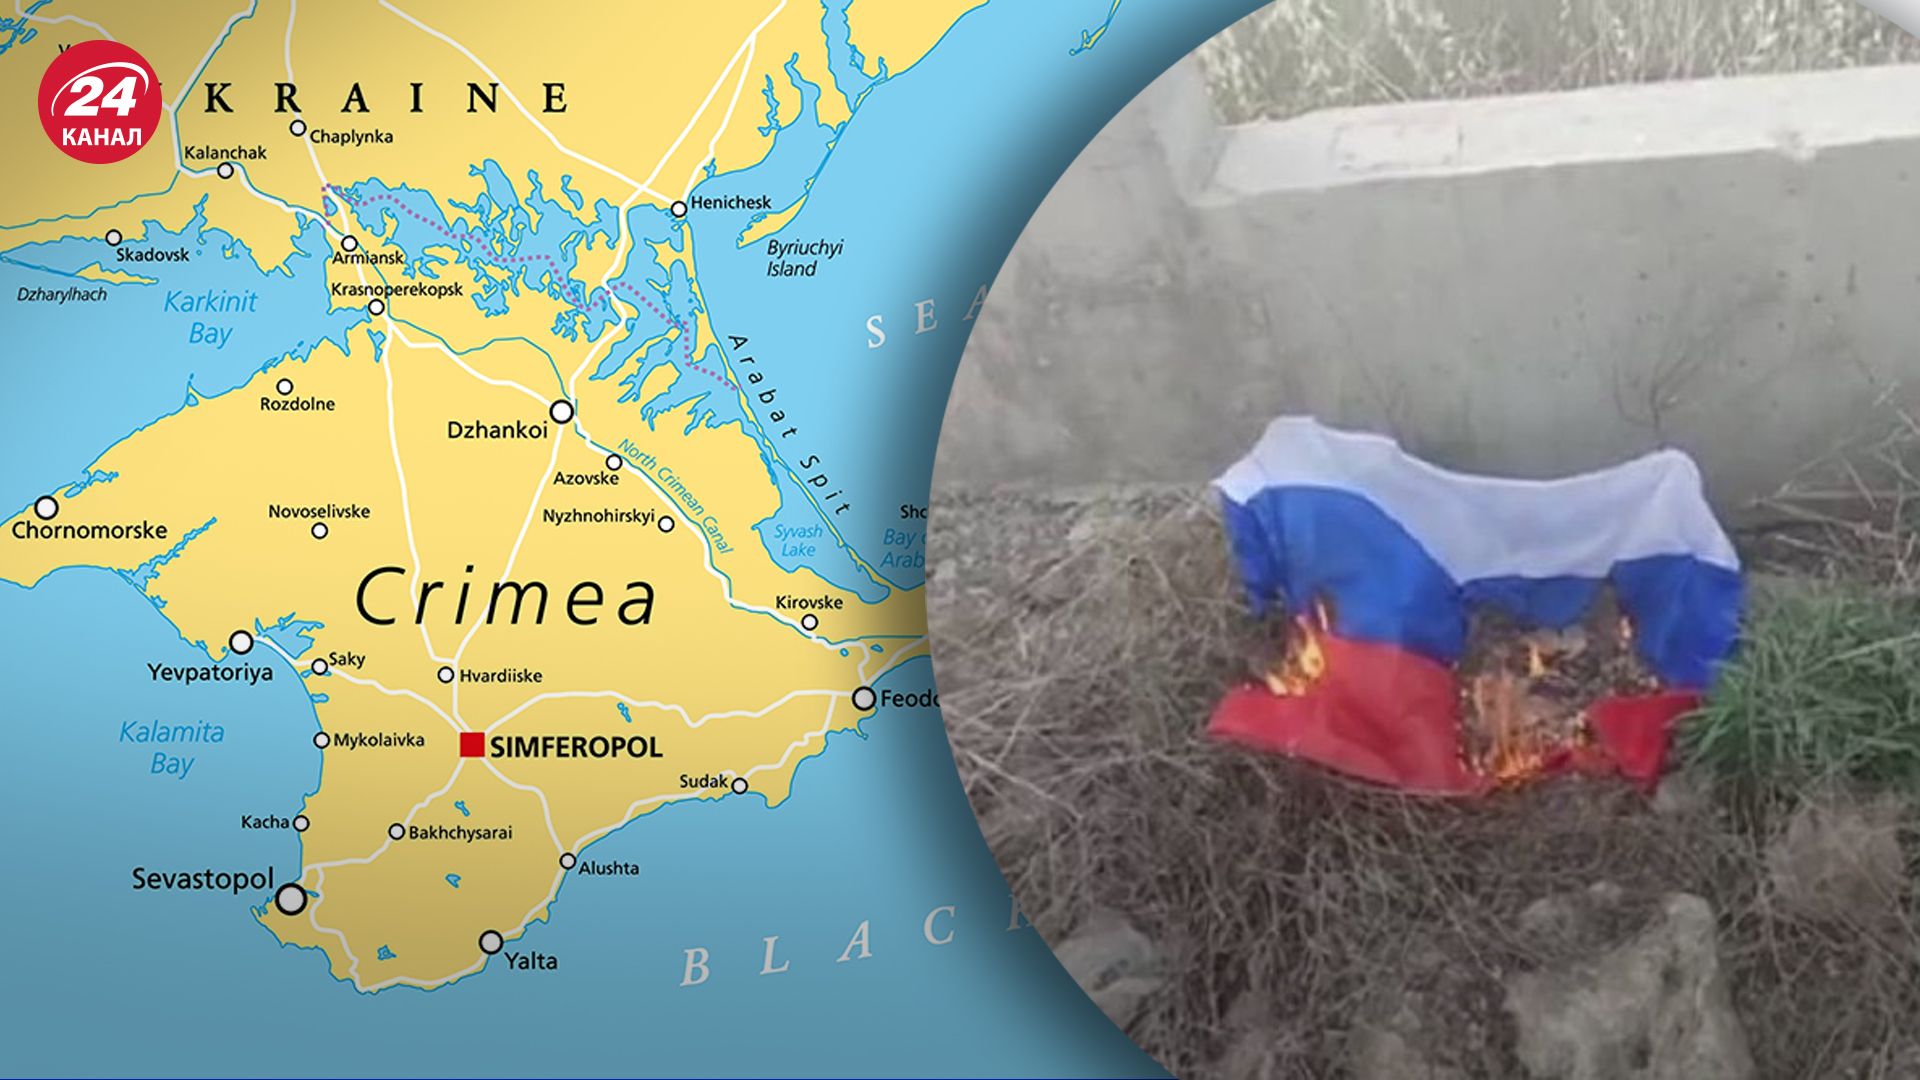 В Крыму местные уничтожали российскую символику